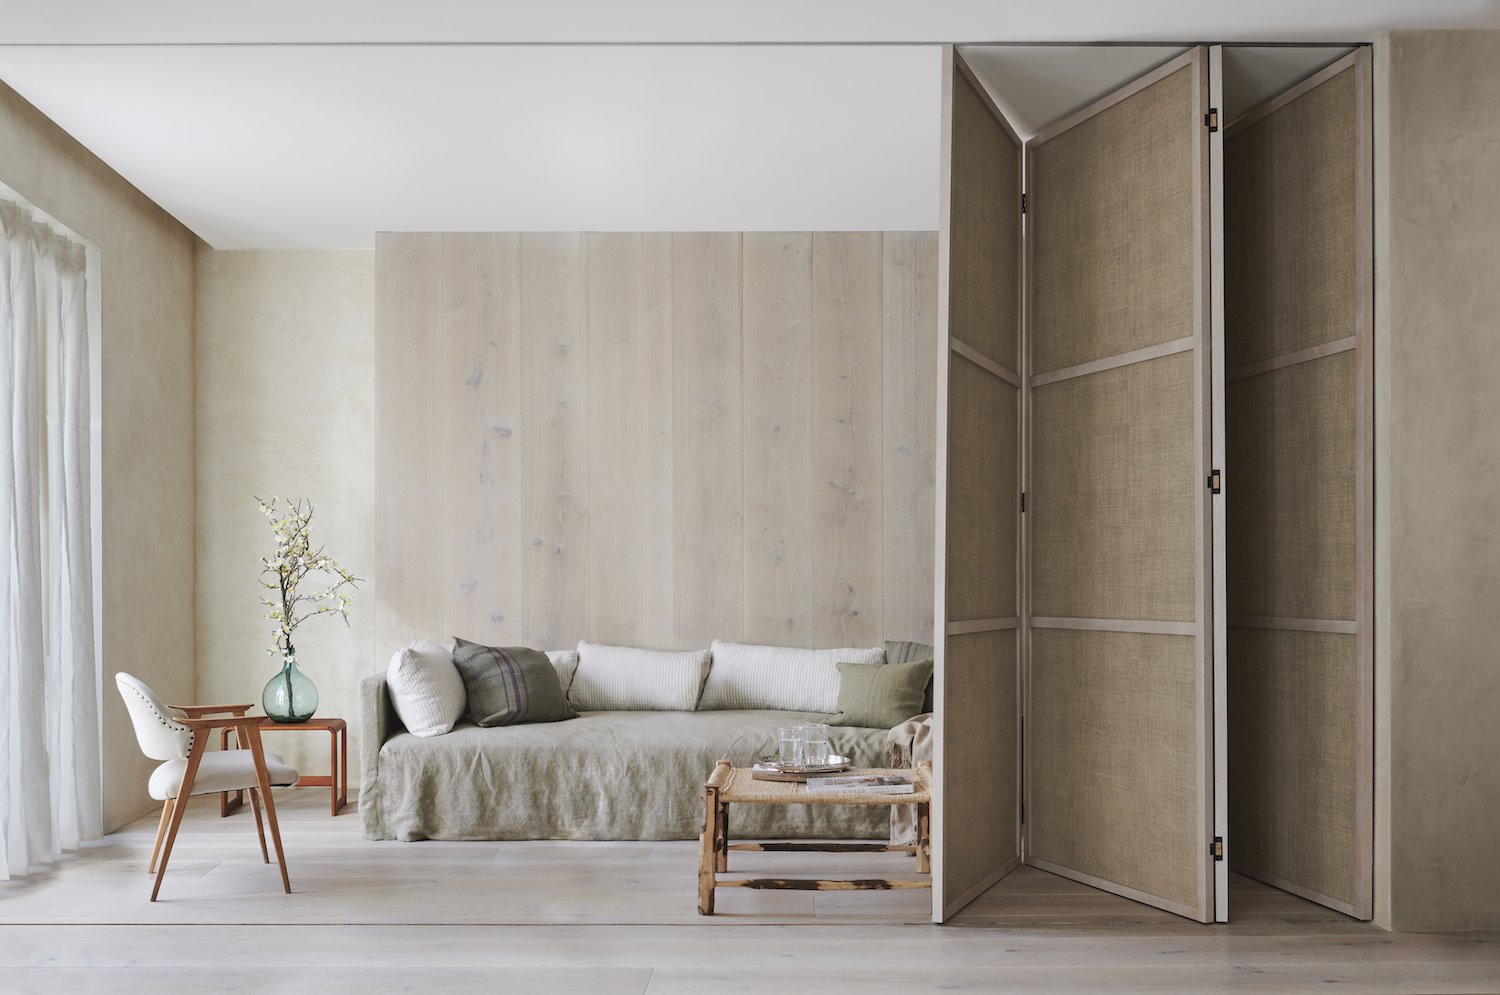 Salon con decoracion minimalista y pocos elementos modernos